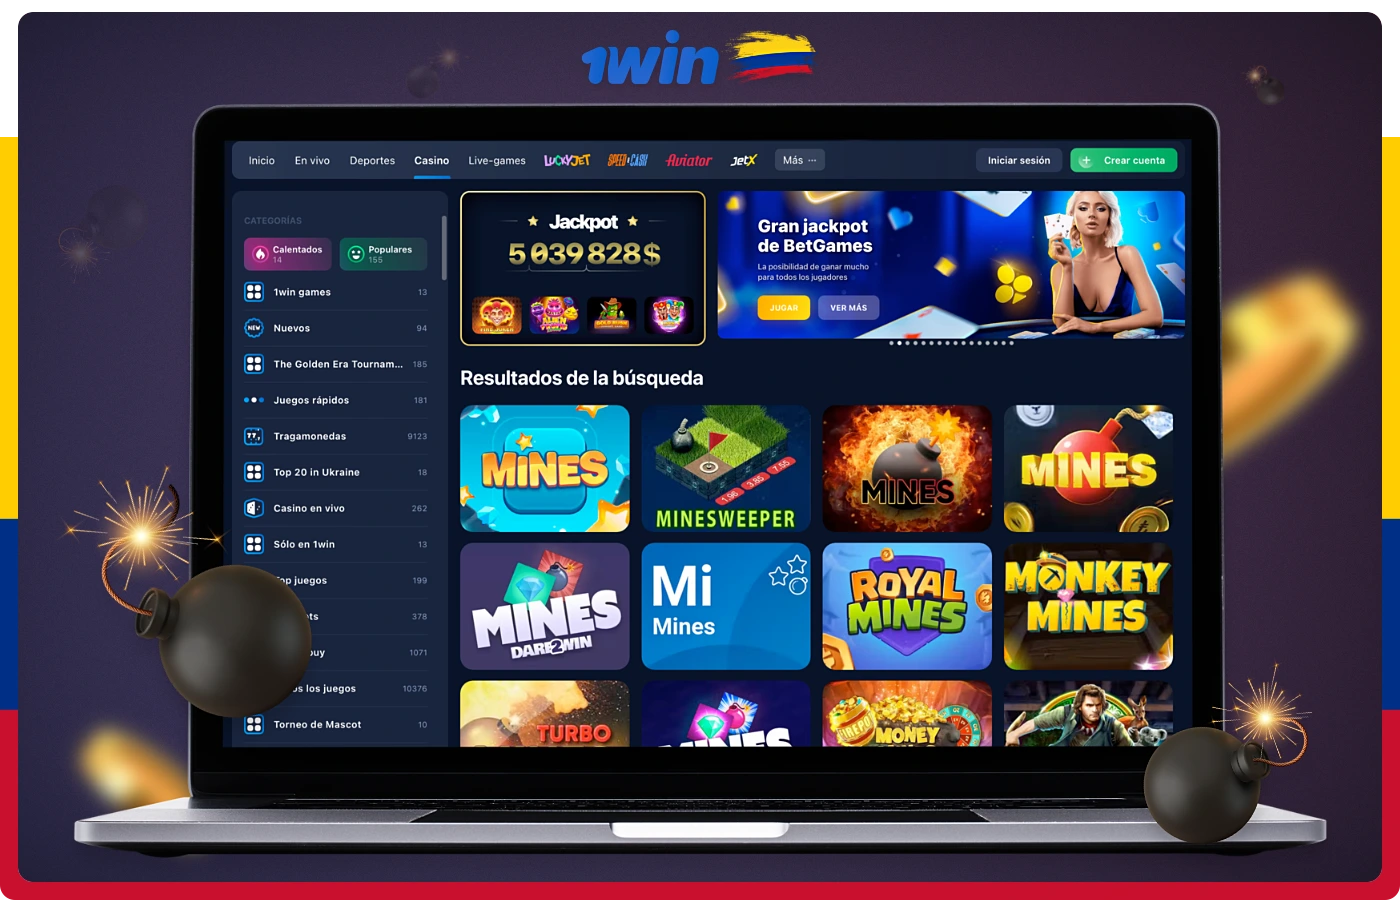 Varios juegos del género de las minas están a disposición de los usuarios colombianos en la plataforma 1win